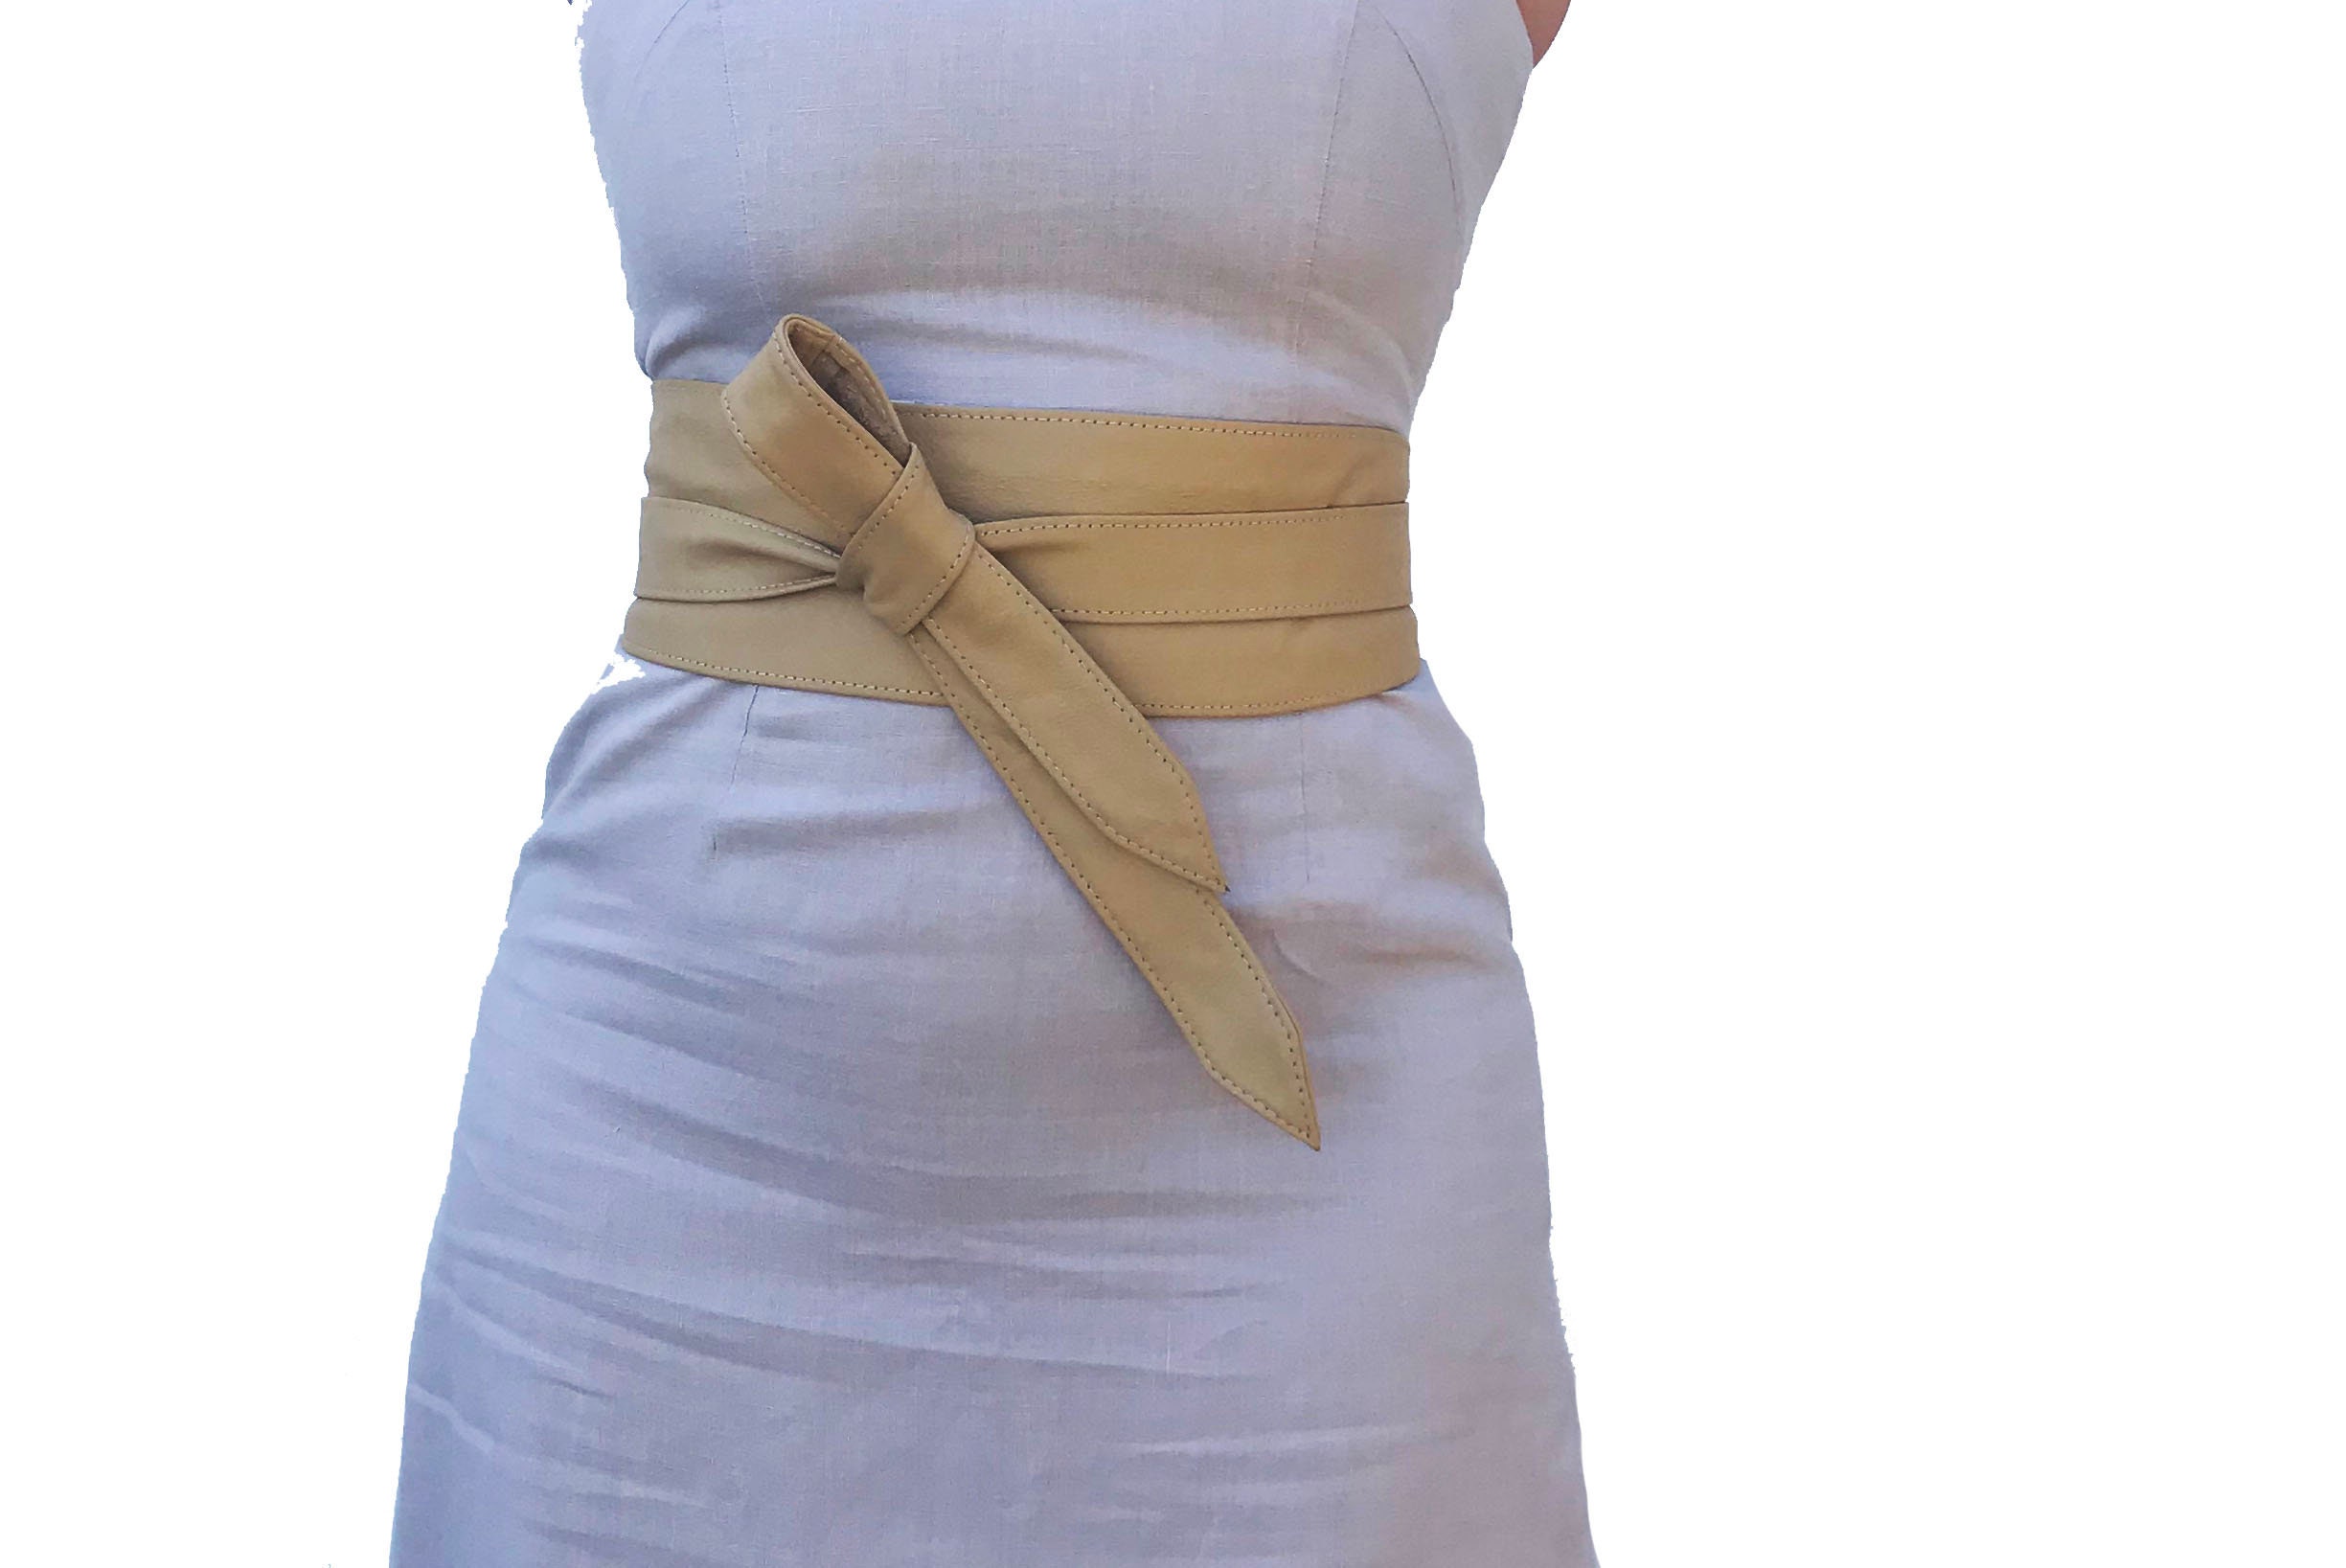 Fgalazebags Women's Wide Wrap Leather Belt